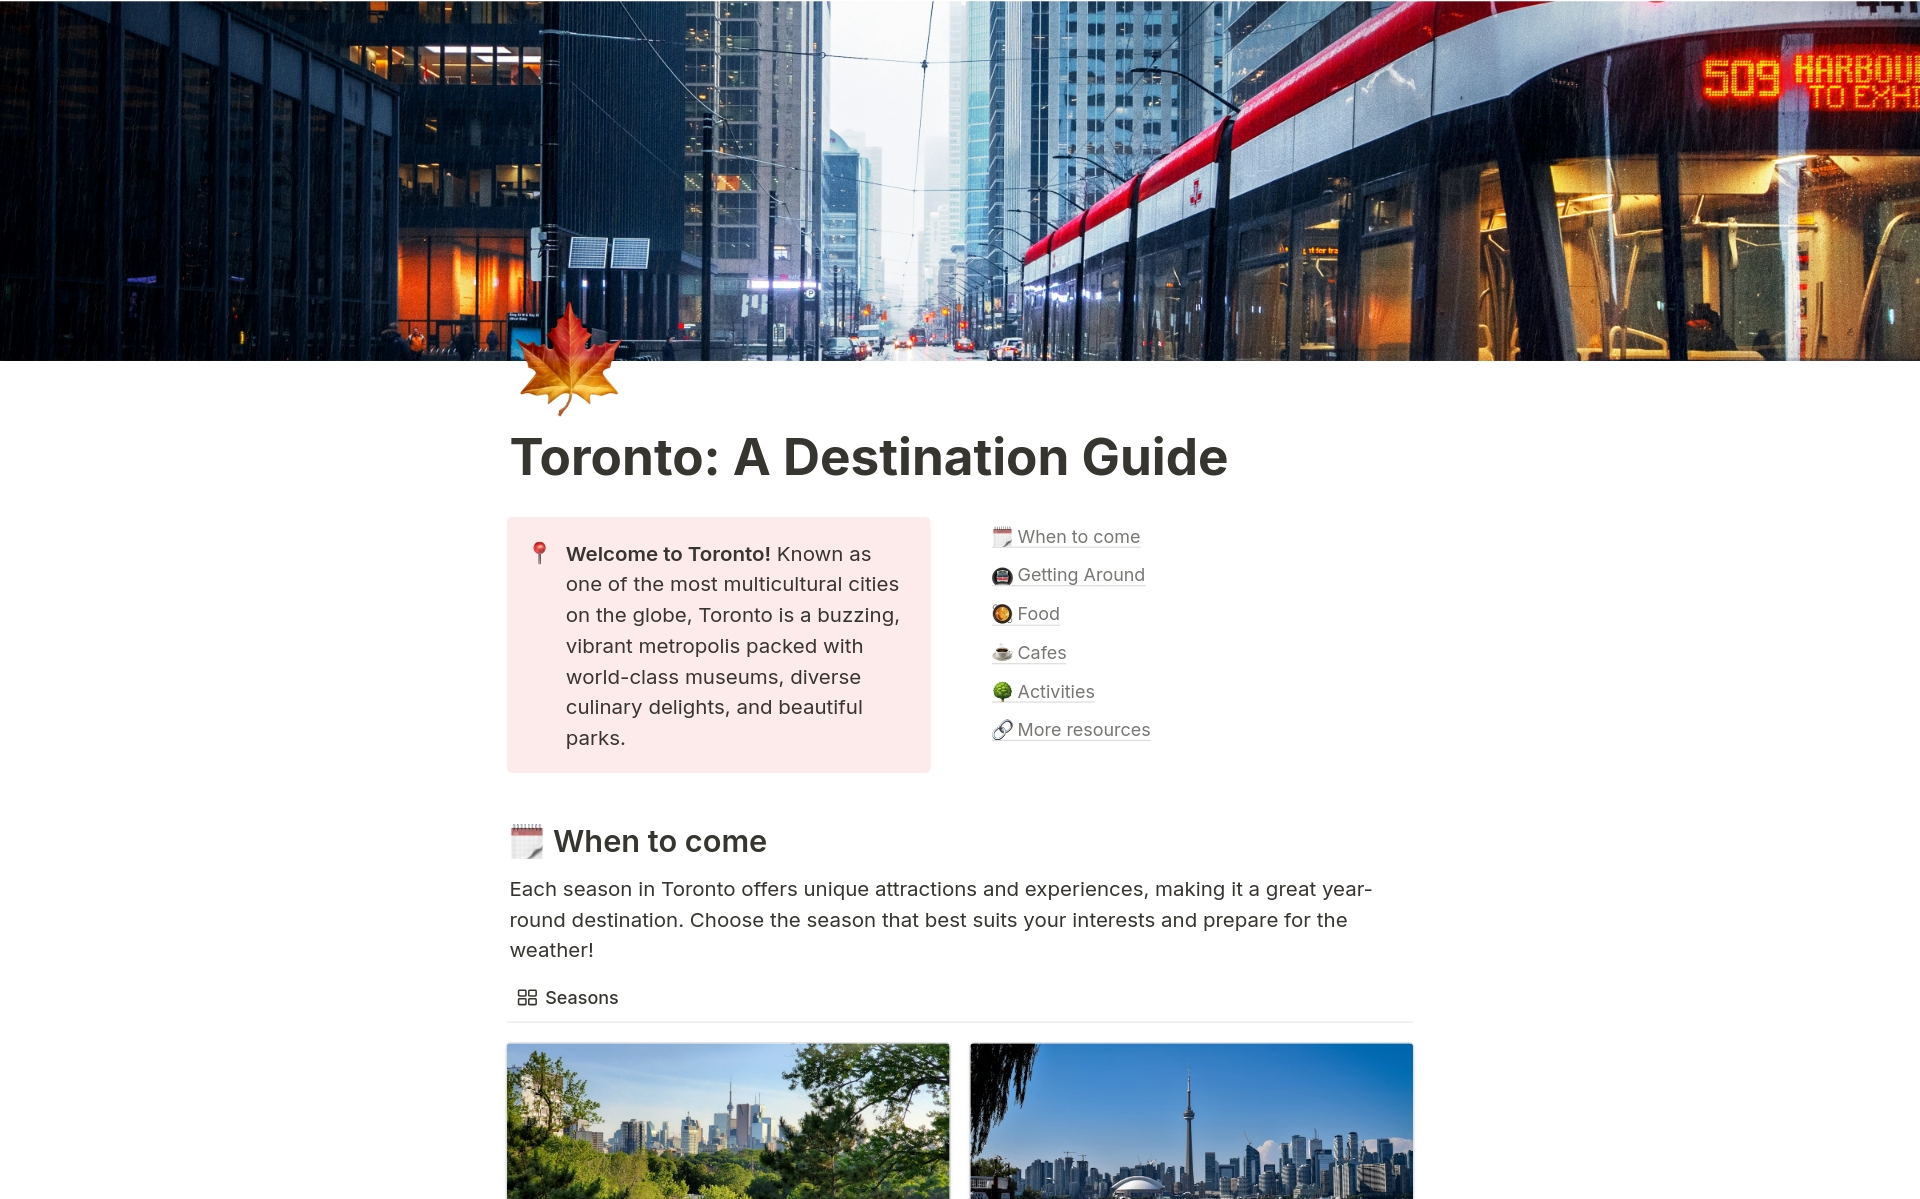 Conquering Toronto: A Destination Guide님의 템플릿 미리보기